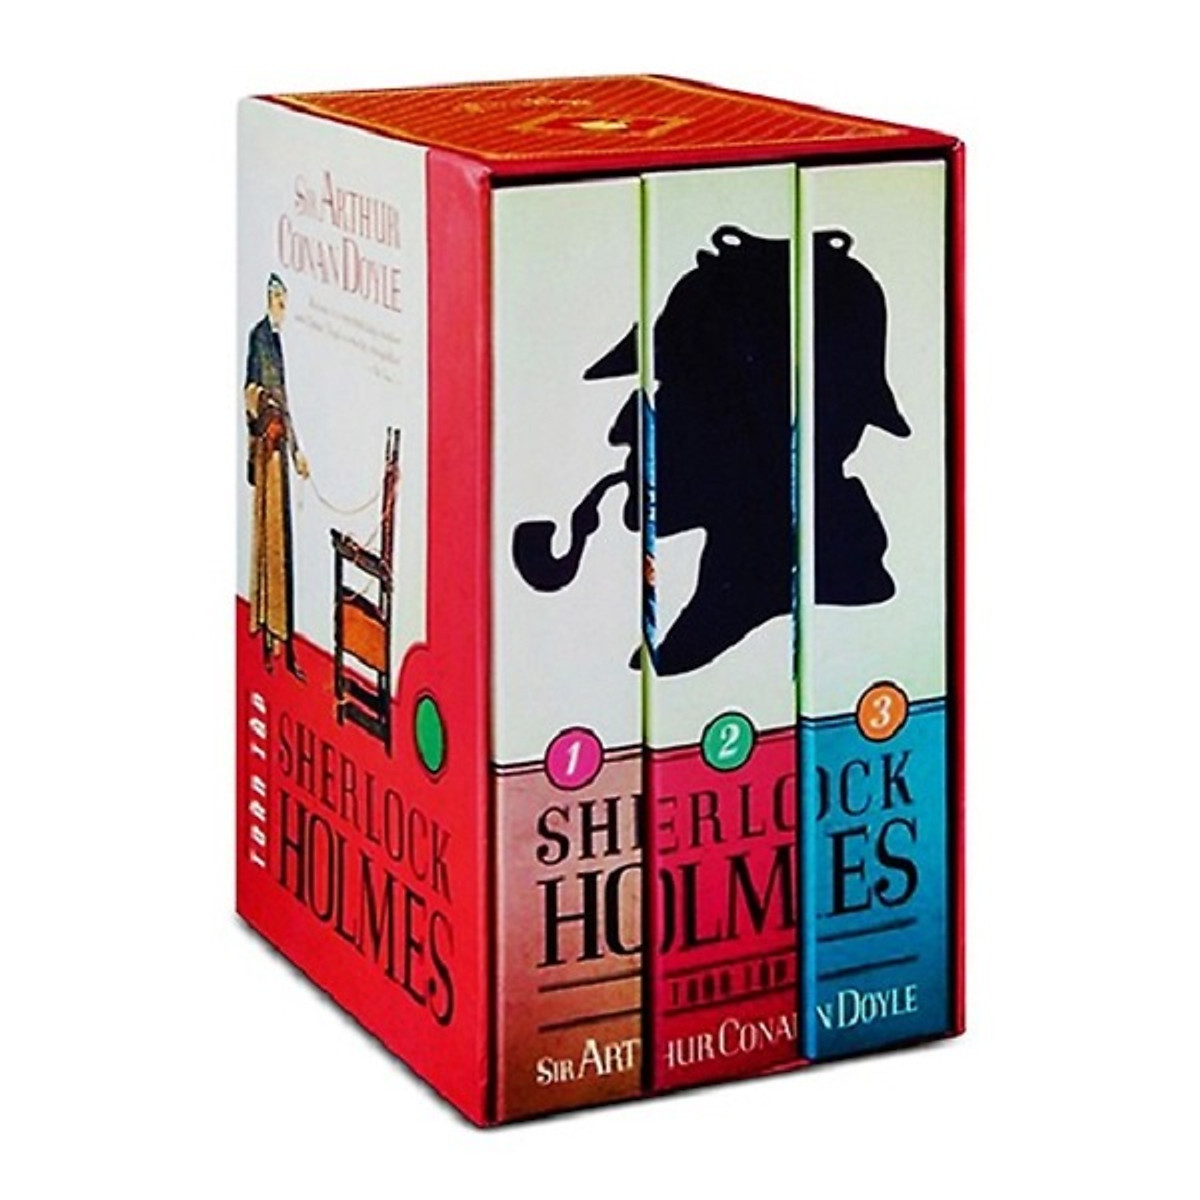 Trọn Bộ 3 Tập Sherlock Holmes Toàn Tập (Tặng kèm sổ tay)